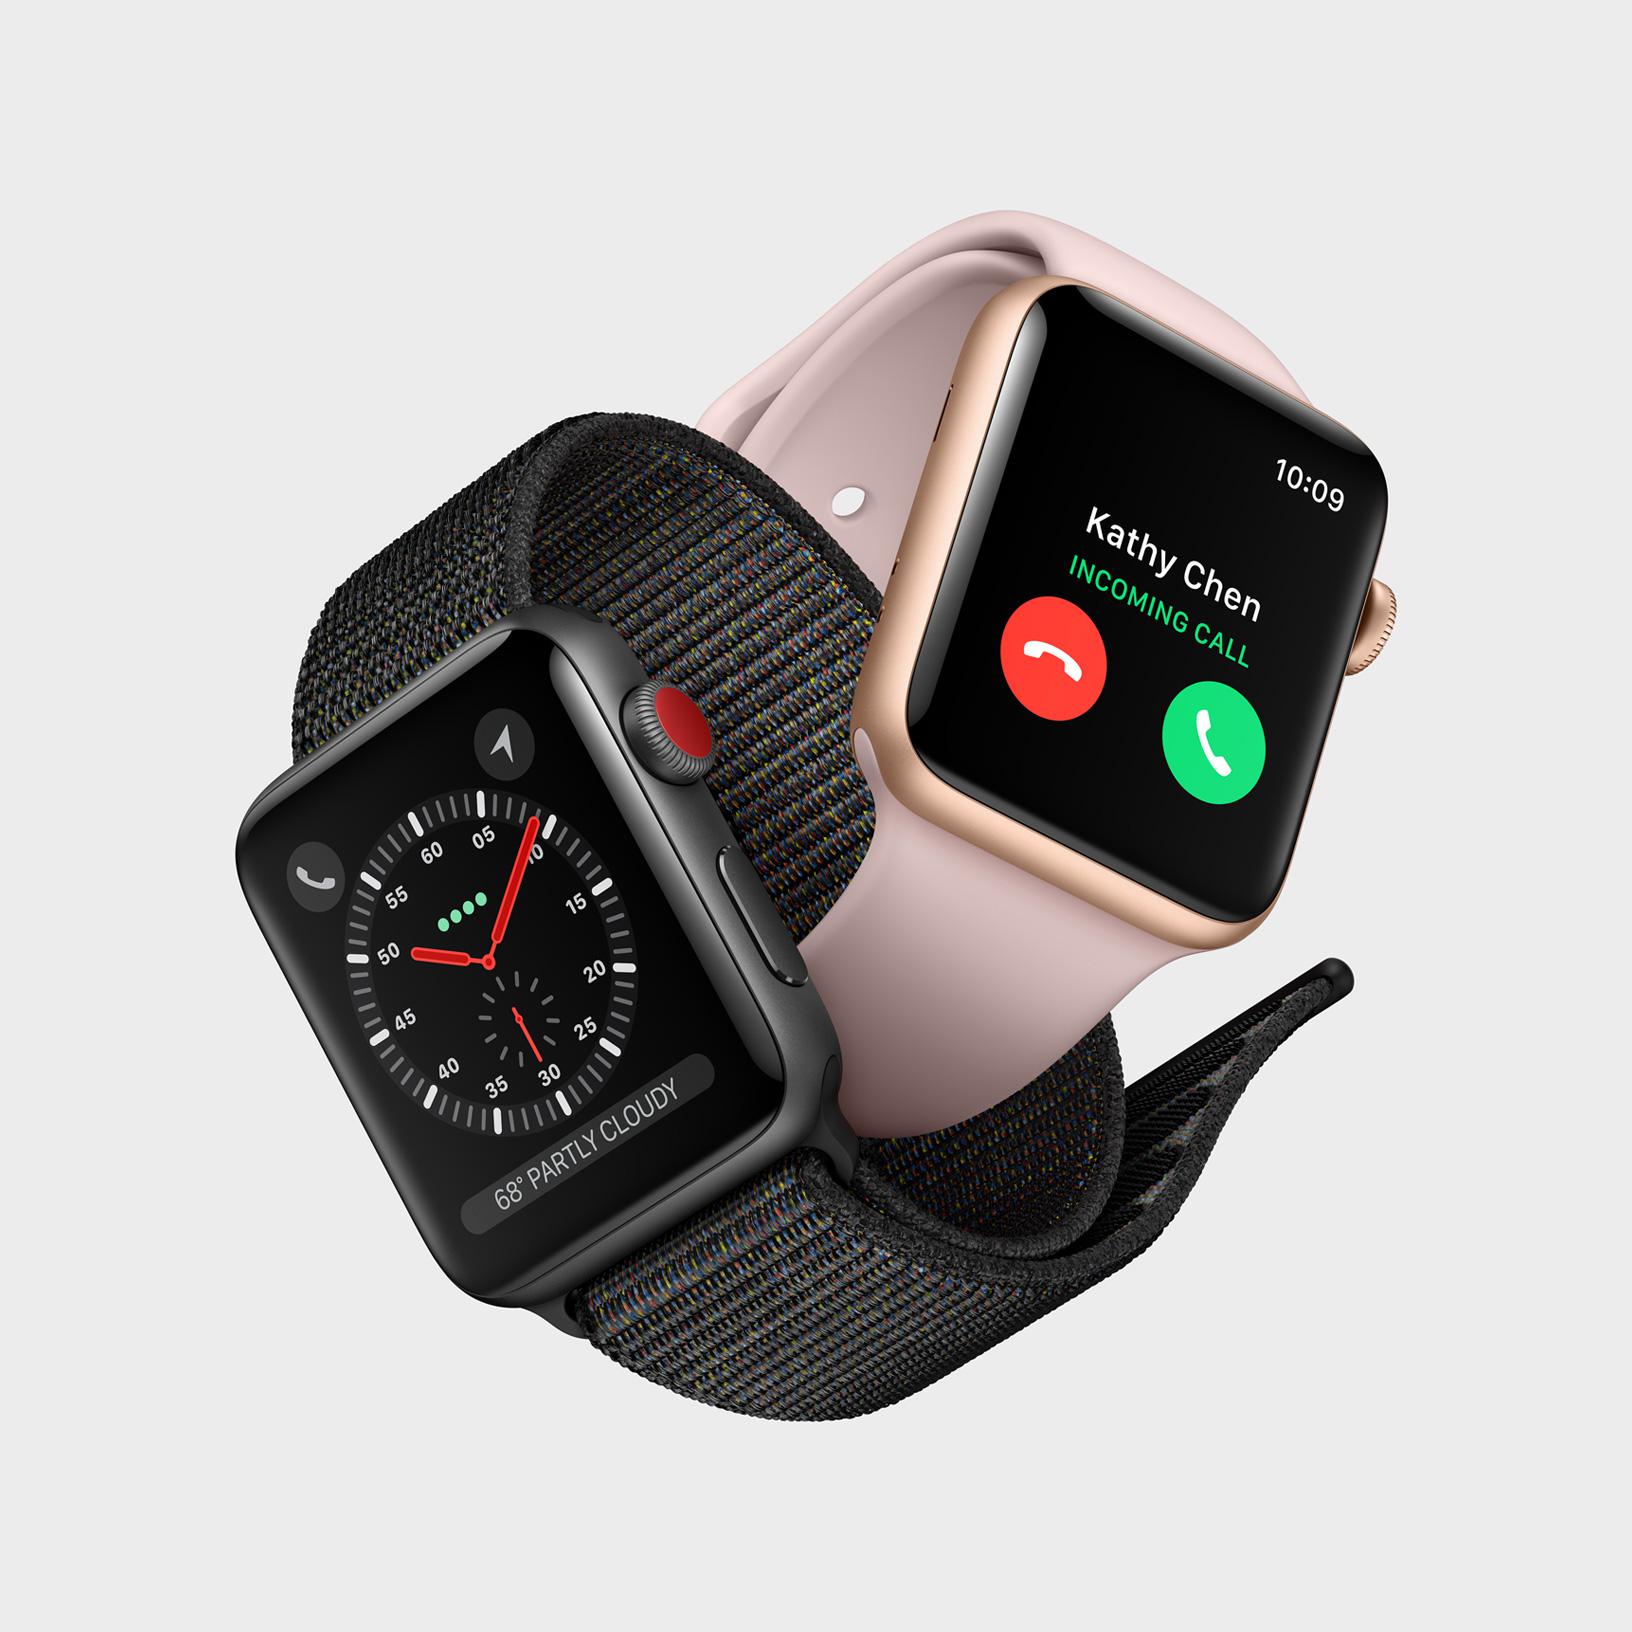 Apple 苹果 Apple Watch Series 3 智能手表 普通版/Cellular版